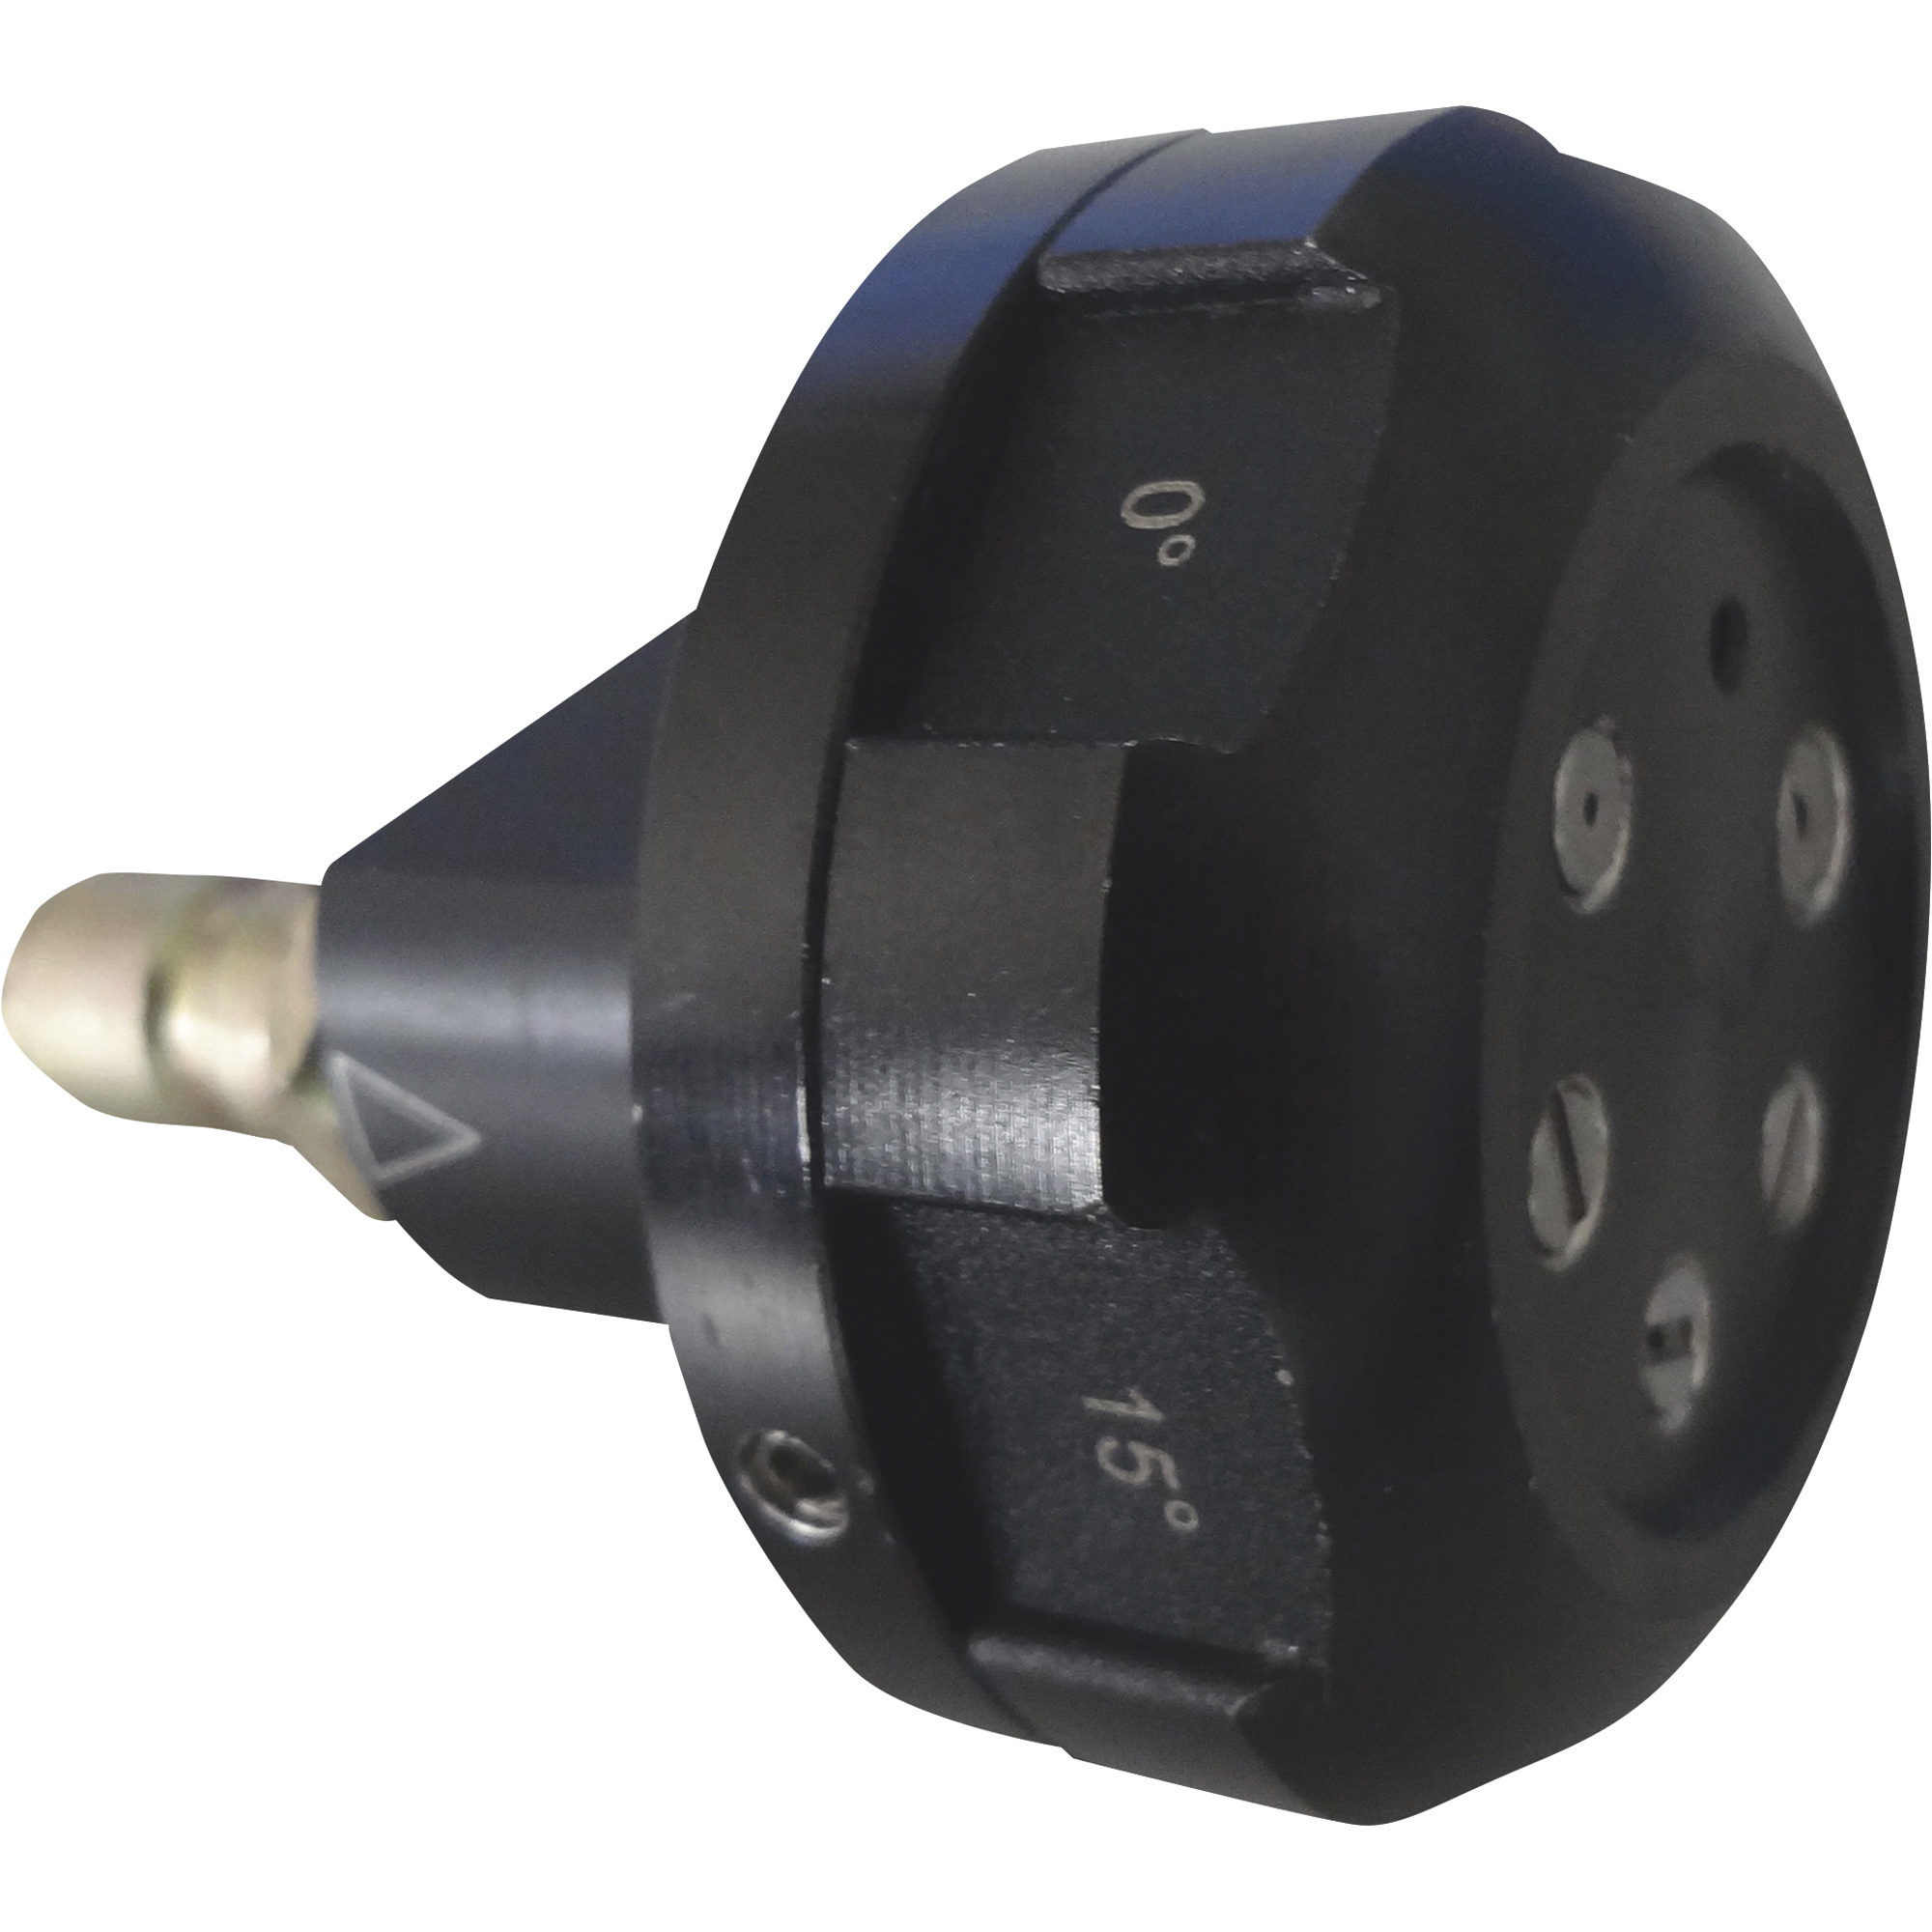 Powerhorse Multi-Pattern Pressure Washer Spray Nozzle, #4.0 Orifice, 3000 PSI